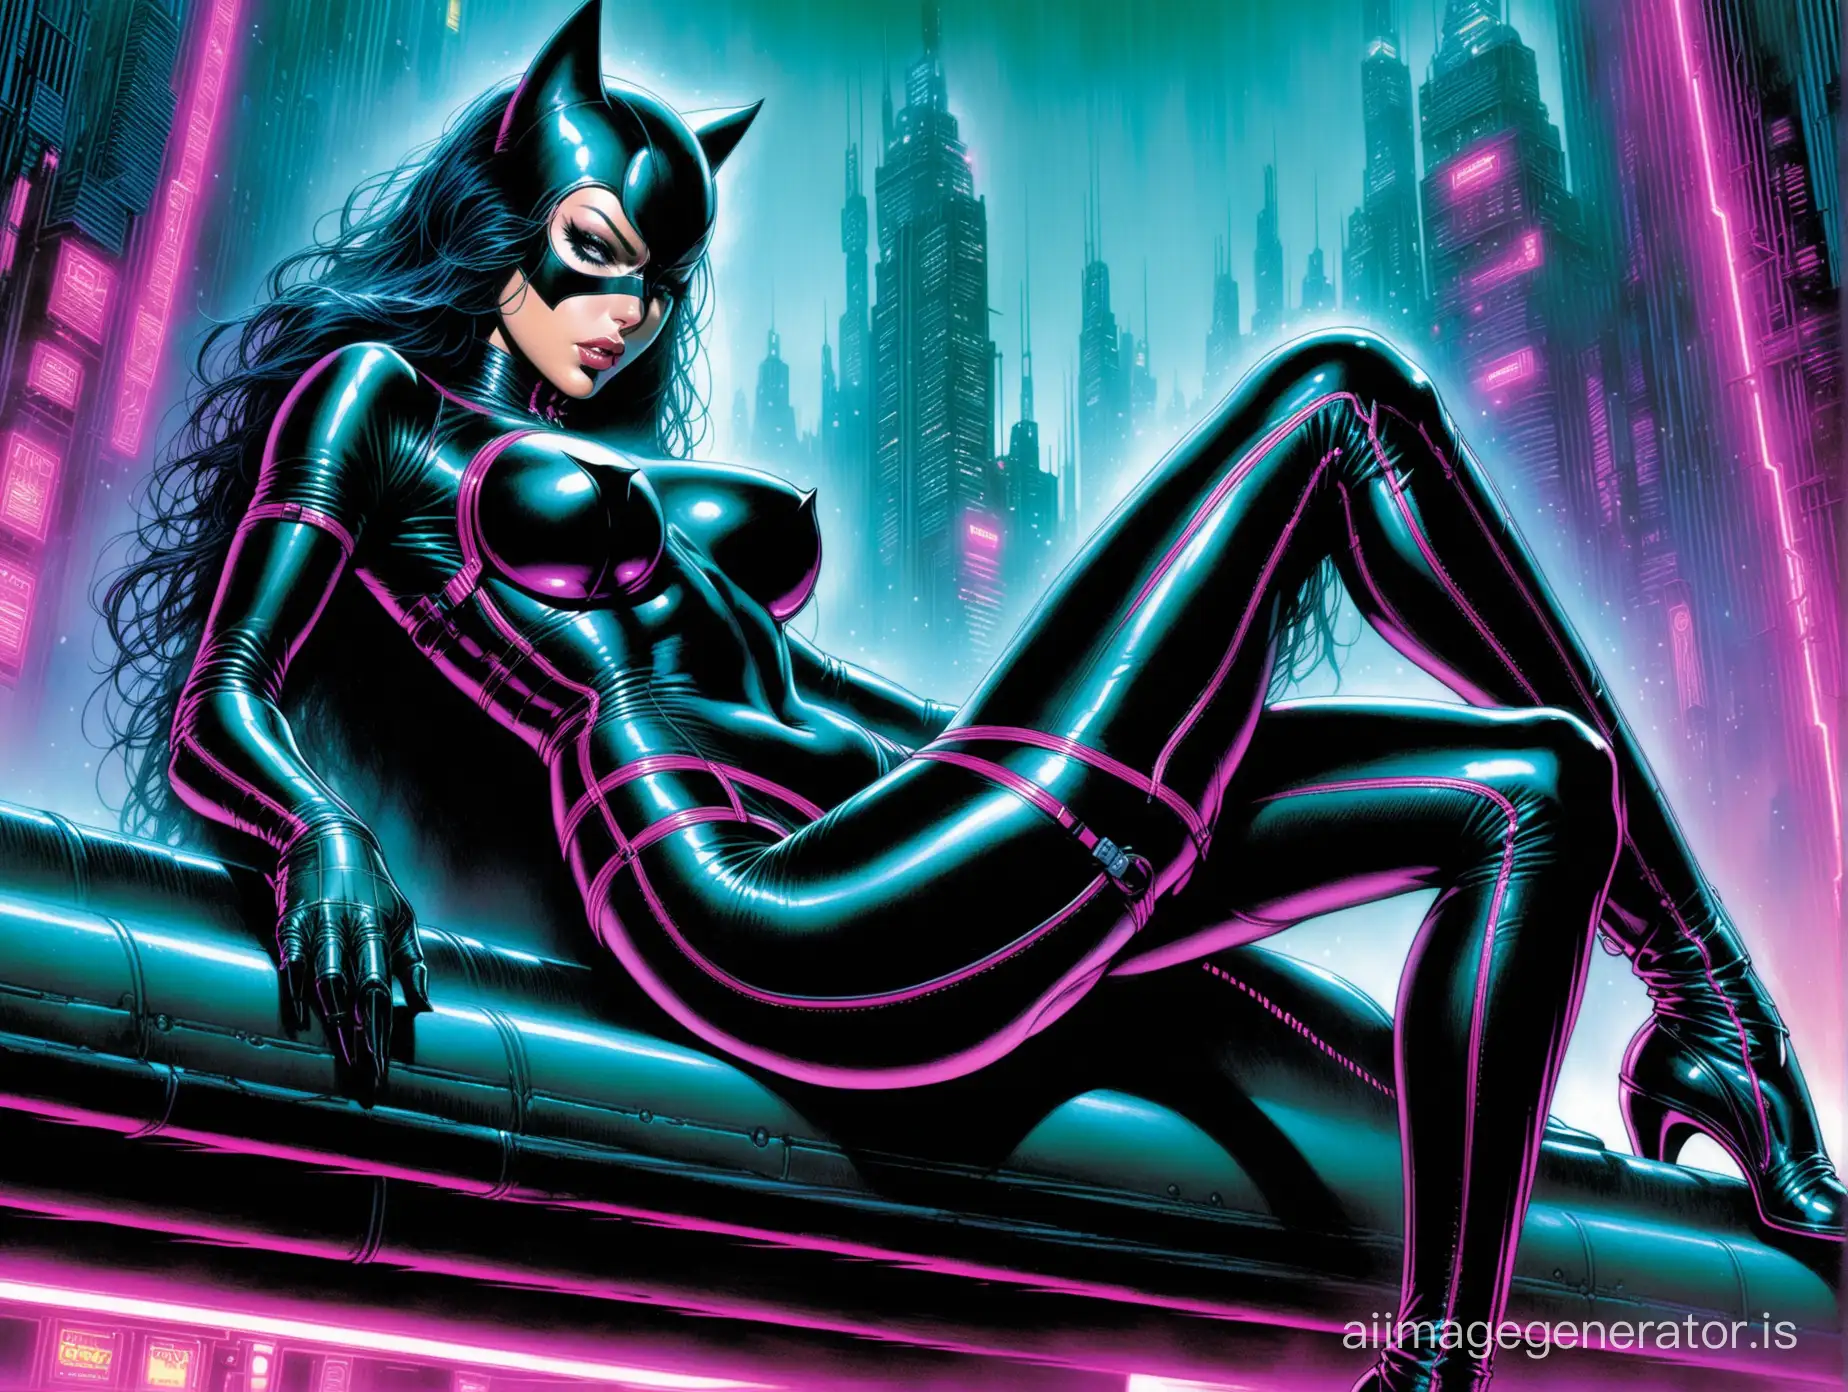 Neon-Cyberpunk-Catwoman-Femme-Fatale-in-Epic-Detail